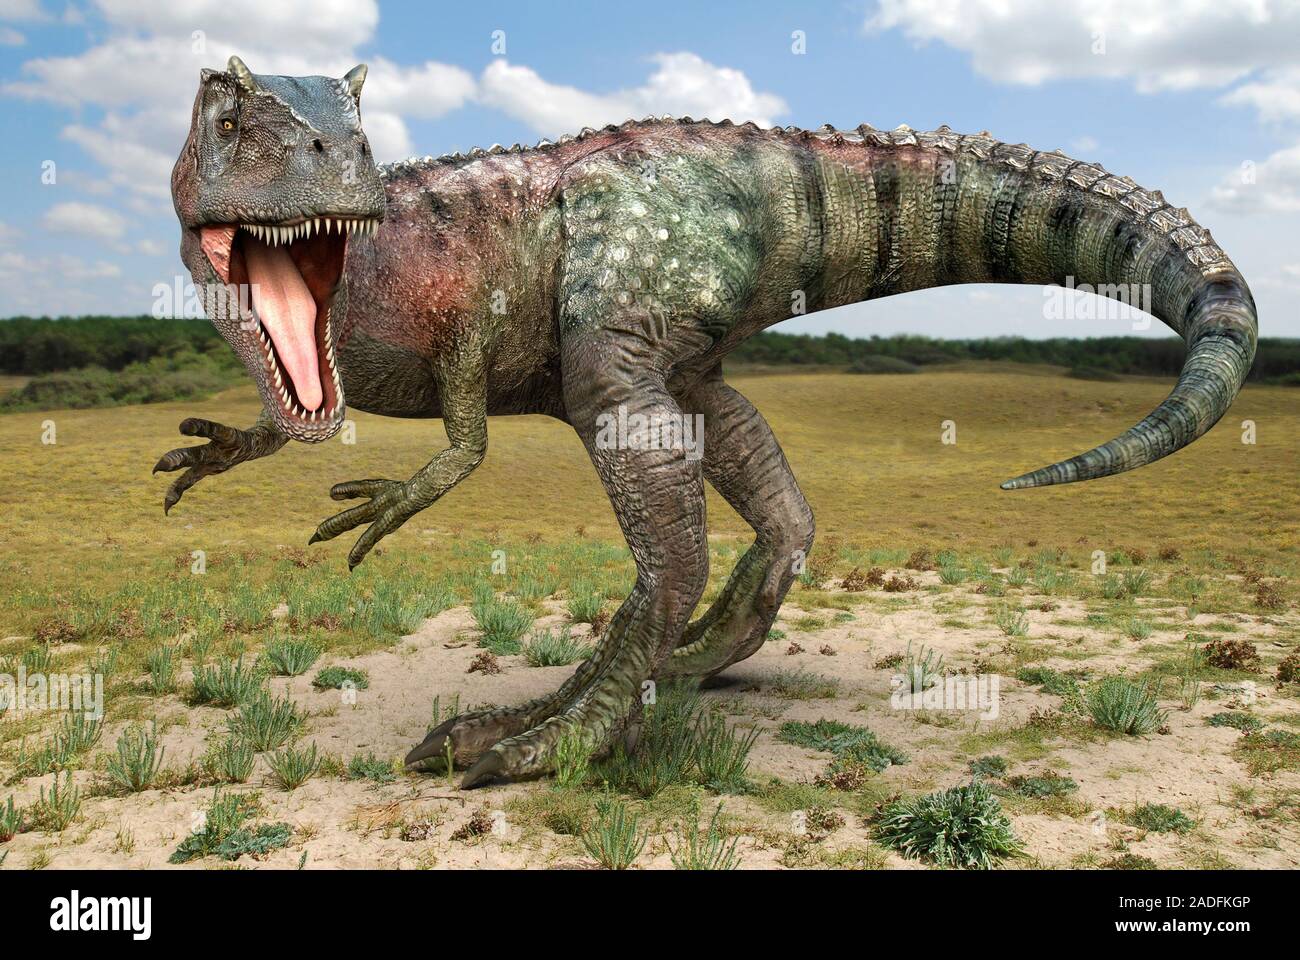 Слово динозавр означает страшный ящер. Аллозавр динозавр. Сибирский Аллозавр. Юрский период Аллозавр. Аллозавр - хищный динозавр.